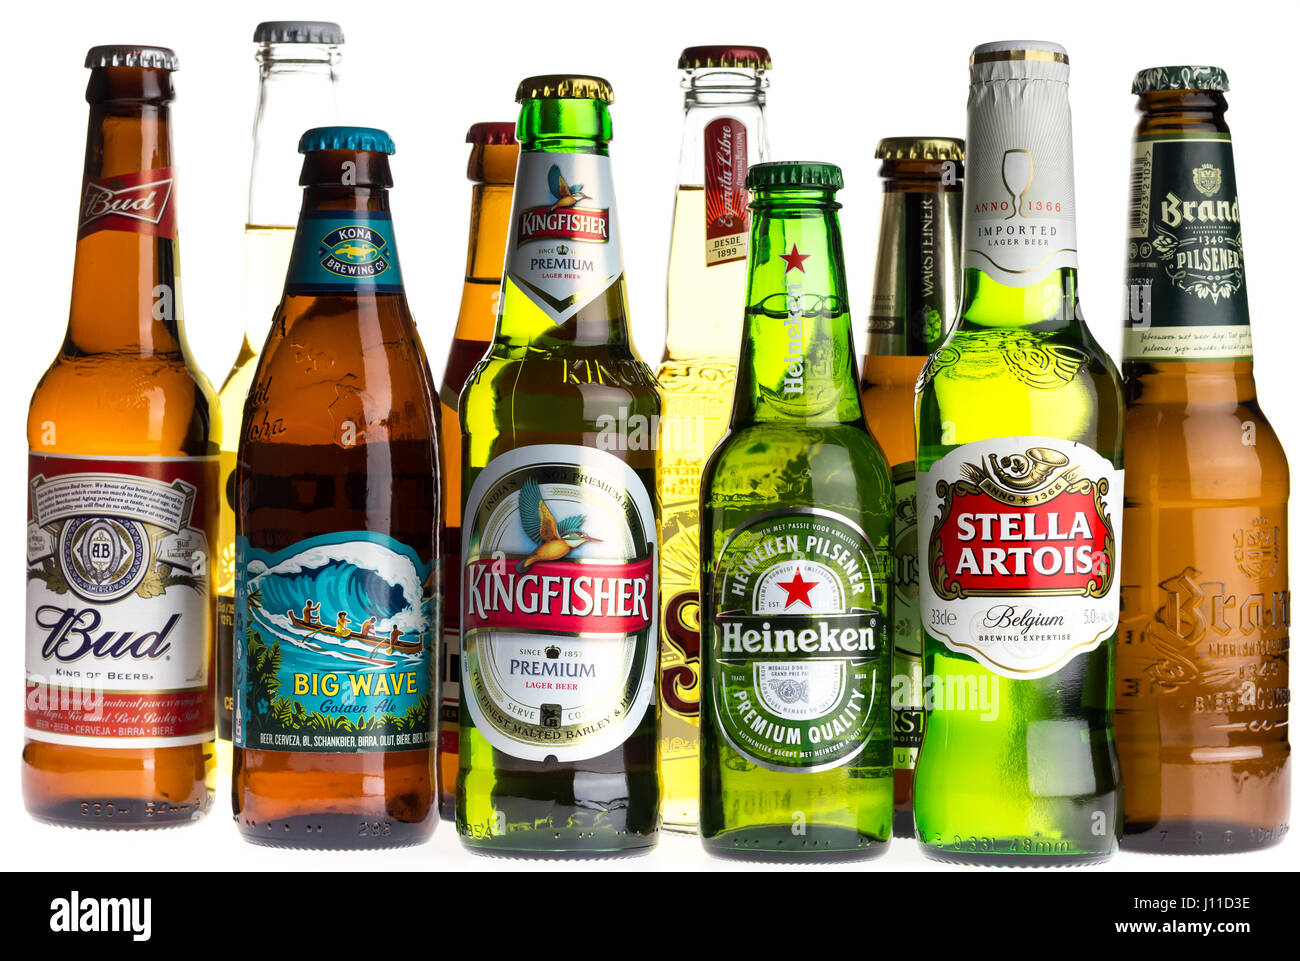 Sammlung von Budweiser, Kona, Sol, Stella Artois, Marke, Corona, Jupiler, Heineken, Warsteiner und Kingfisher Lagerbiere isoliert auf einem weißen Hinterg Stockfoto